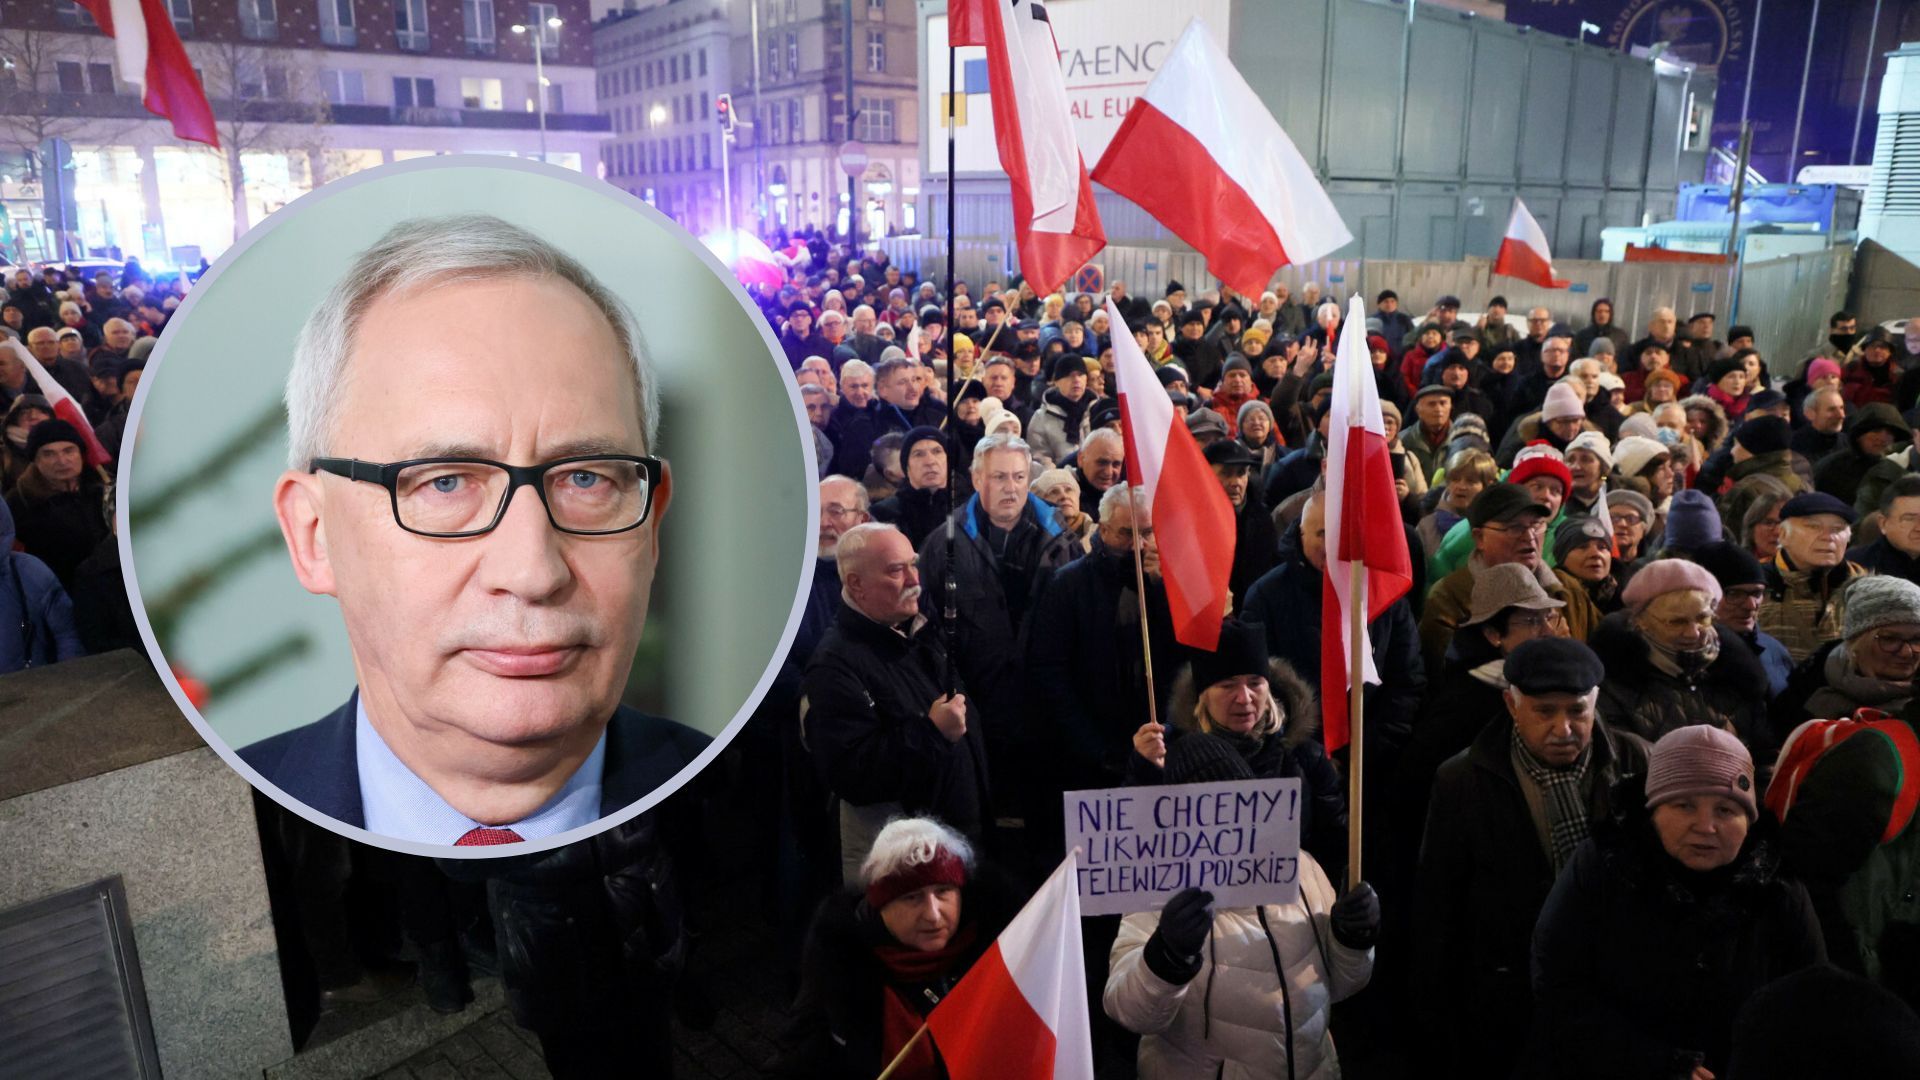 kazimierz smoliński polityk pis demonstracja flagi polska